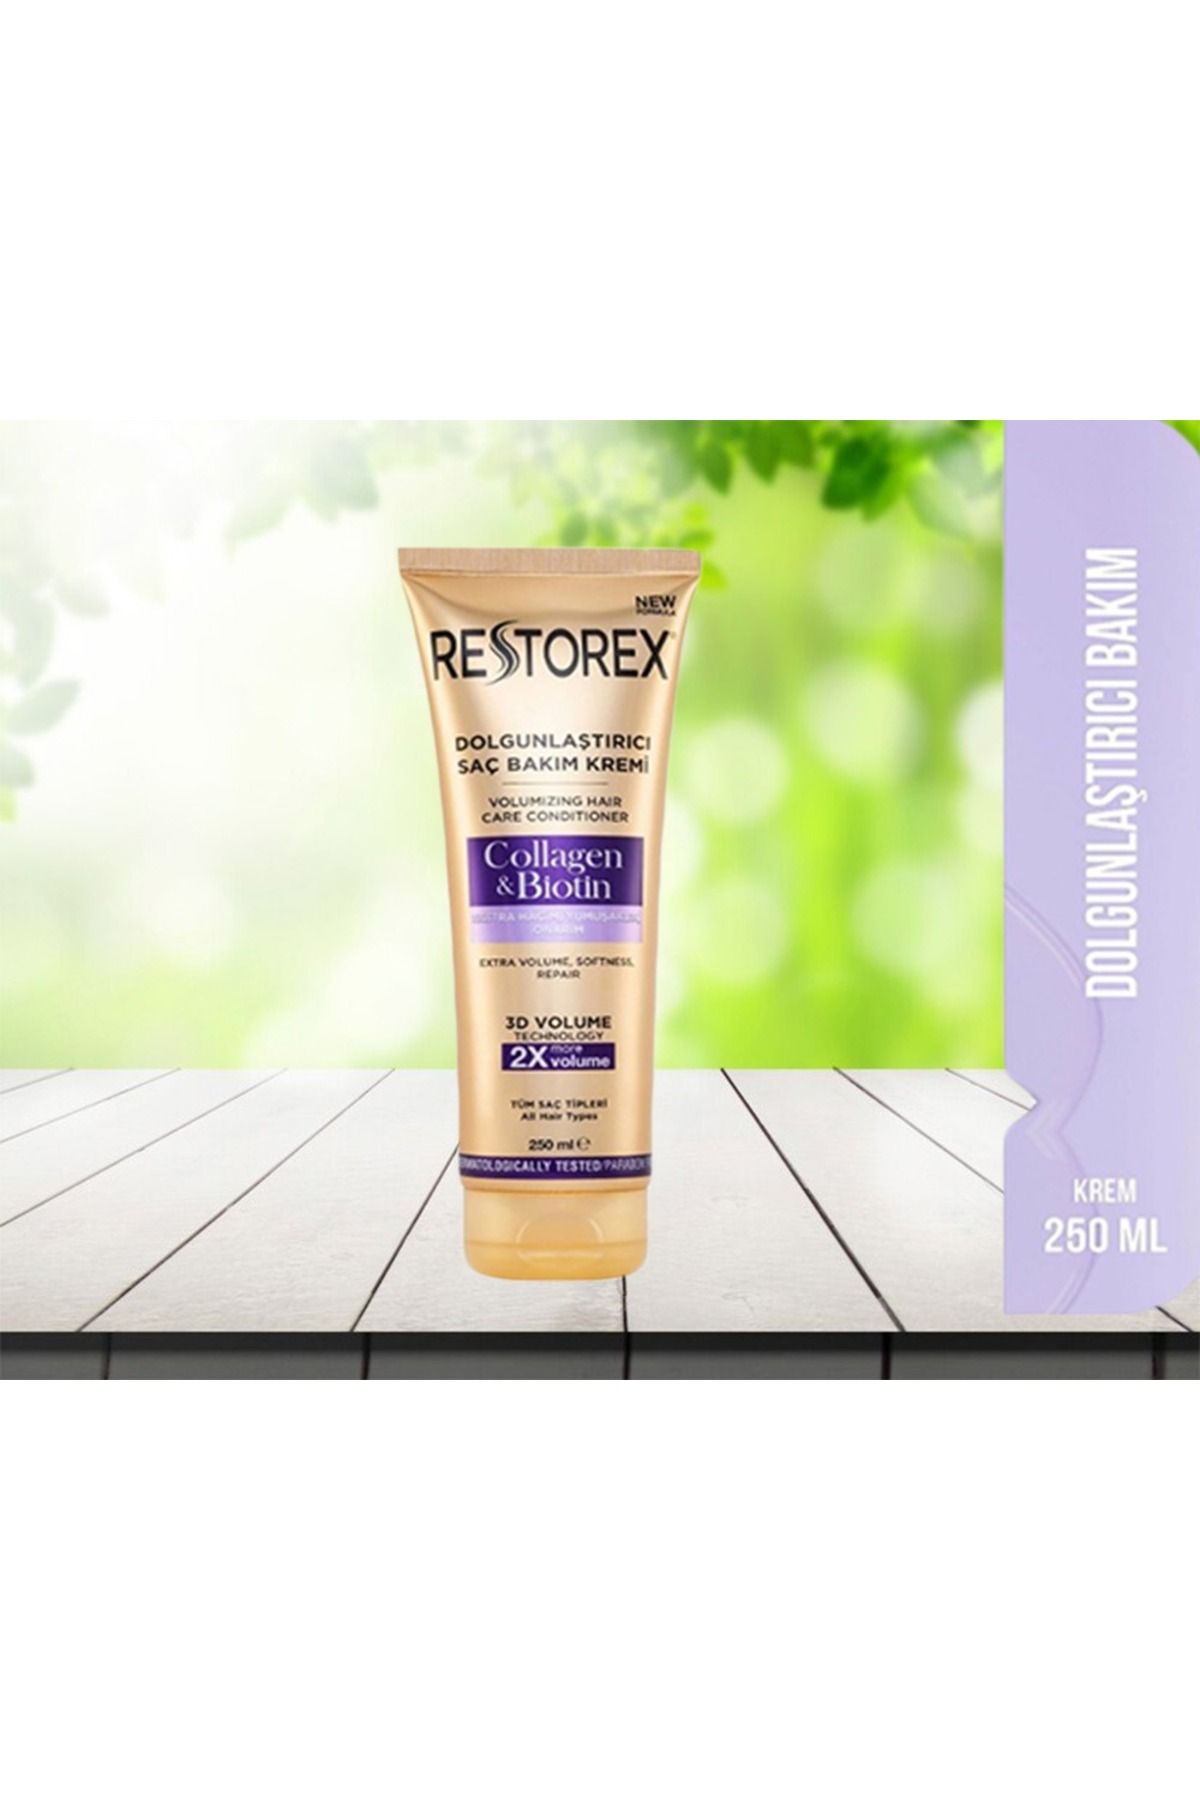 Restorex Dolgunlaştırıcı Saç Bakım Kremi Collagen & Biotin 250 Ml